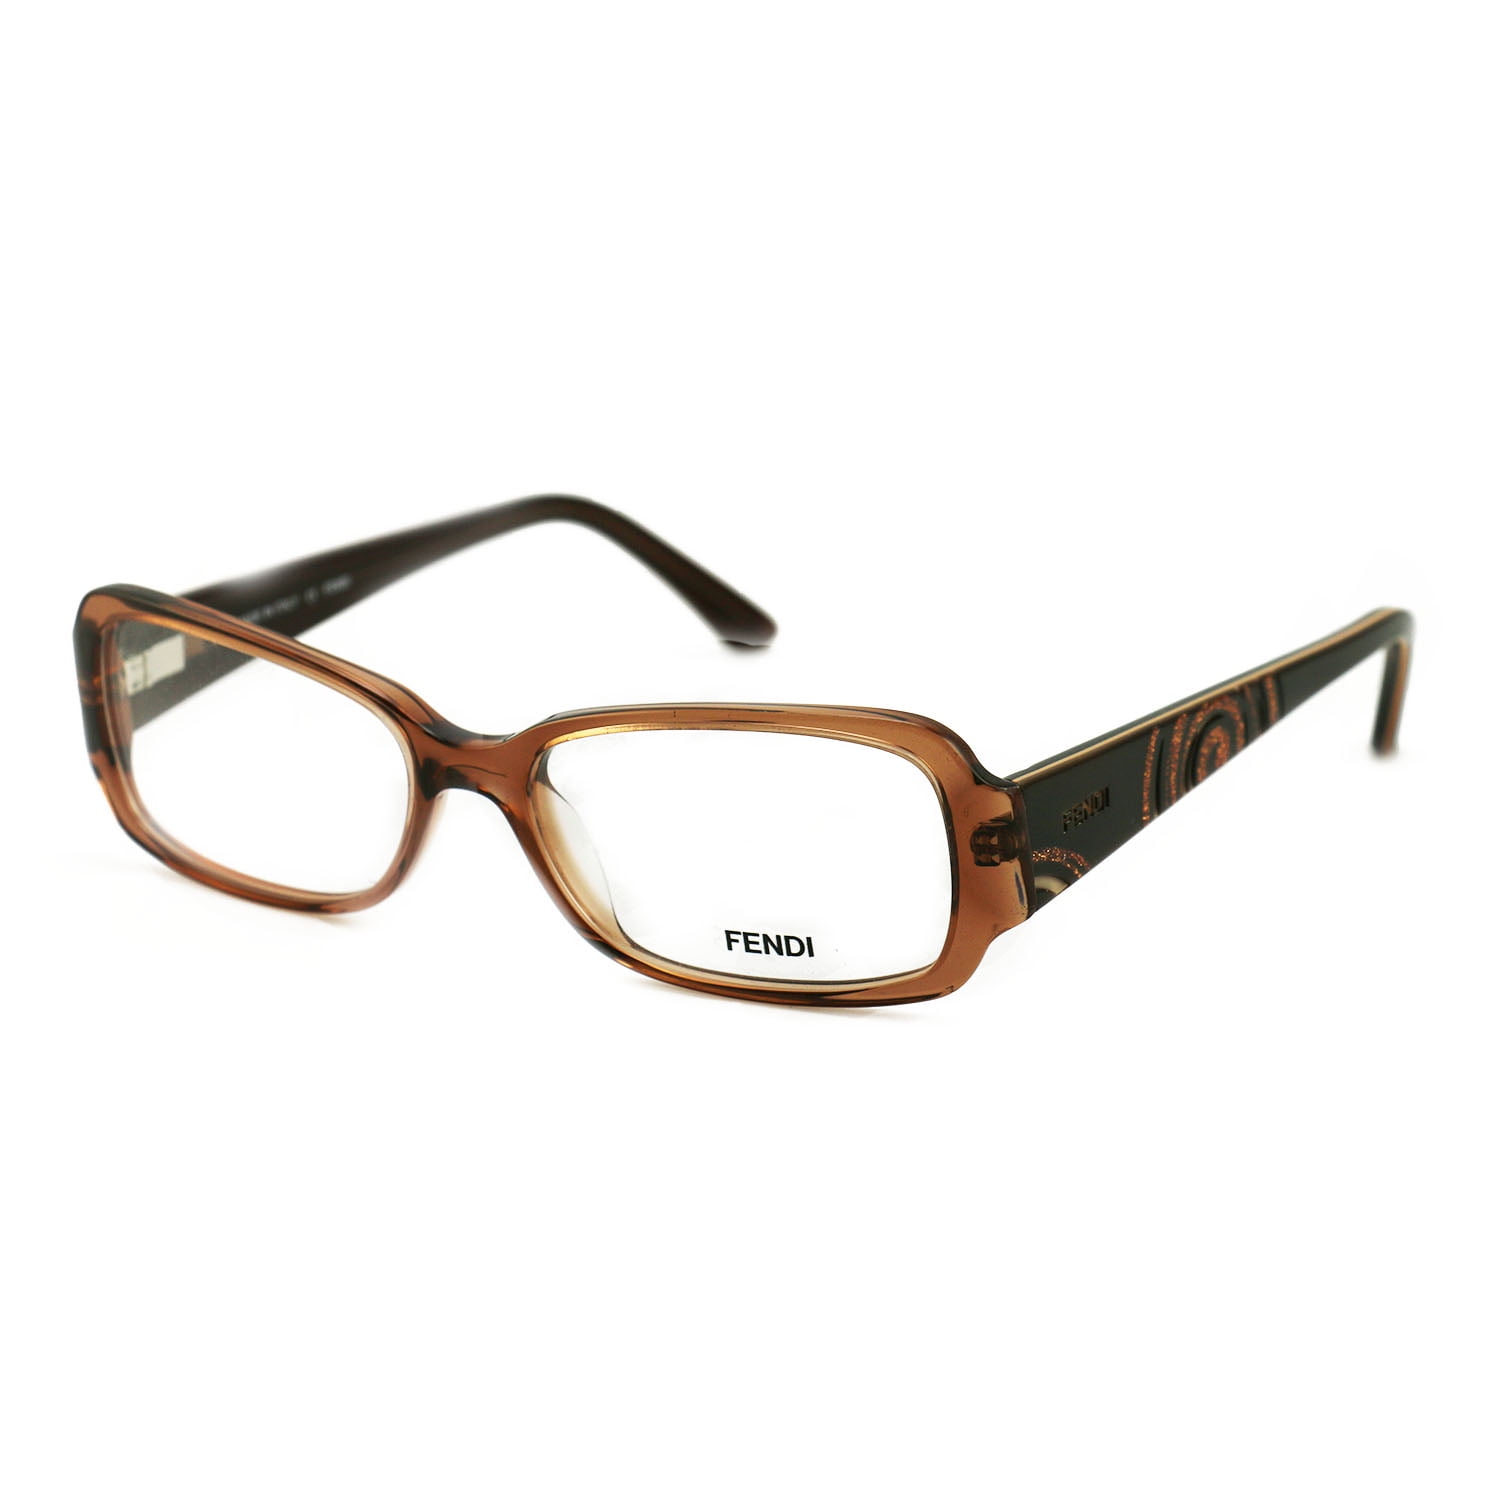 Fendi Women's Eyeglasses F819 245 Brown 51 16 135 Frames Rectangular ...